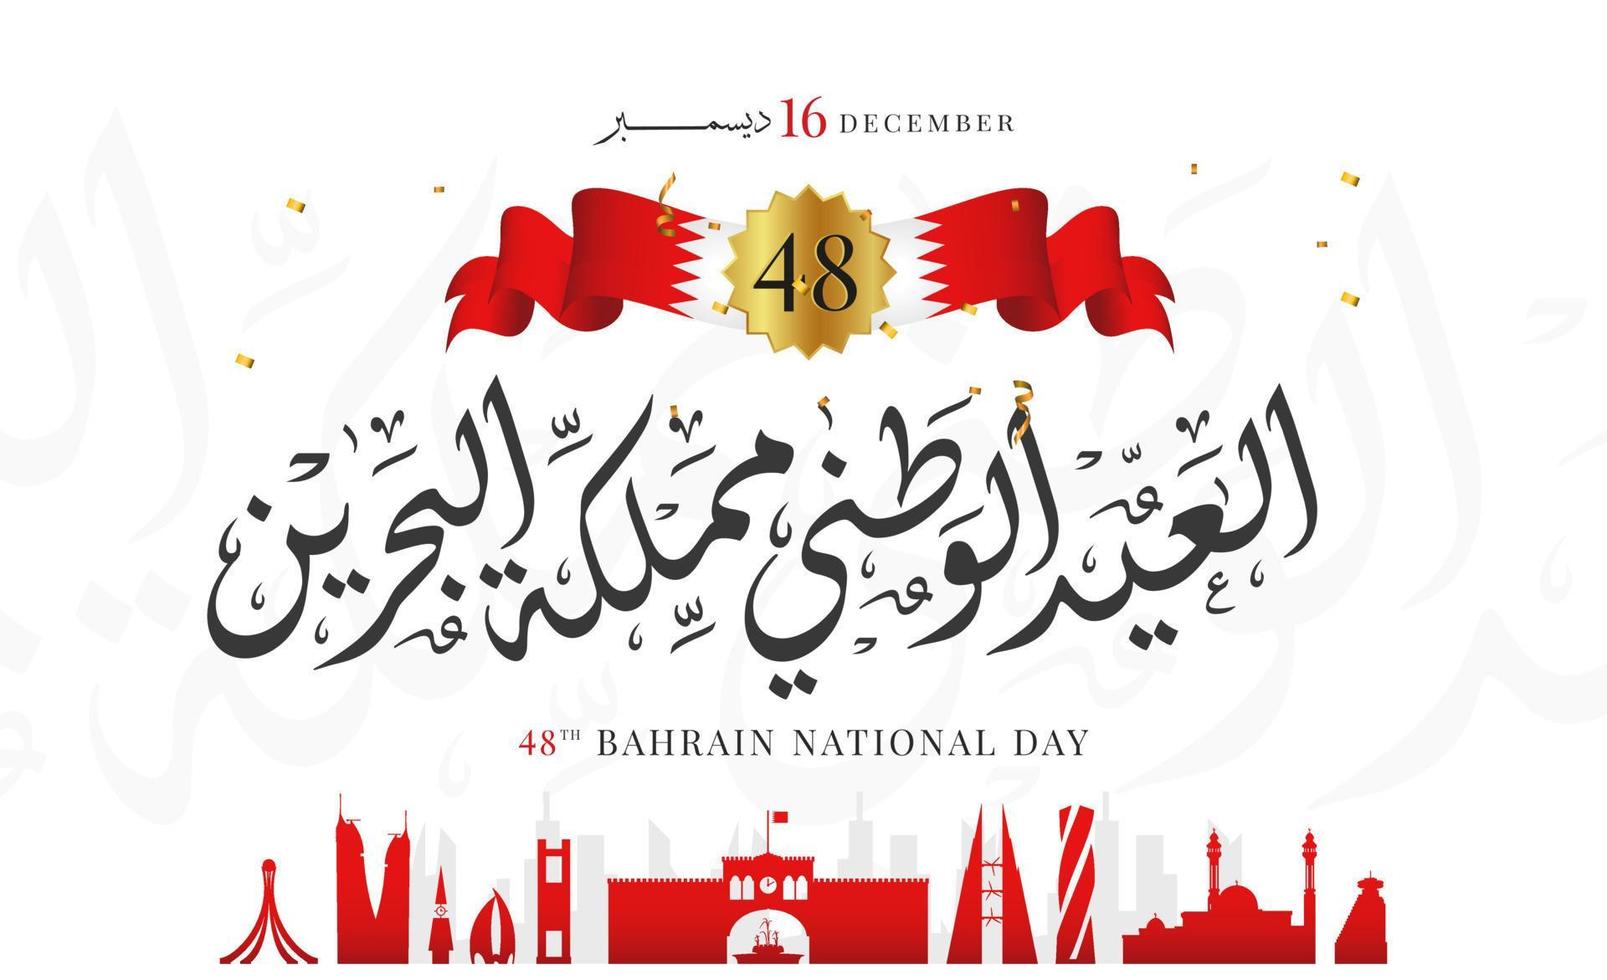 Bahrains nationaldag, Bahrains självständighetsdag, 16 december. vektor arabisk kalligrafi